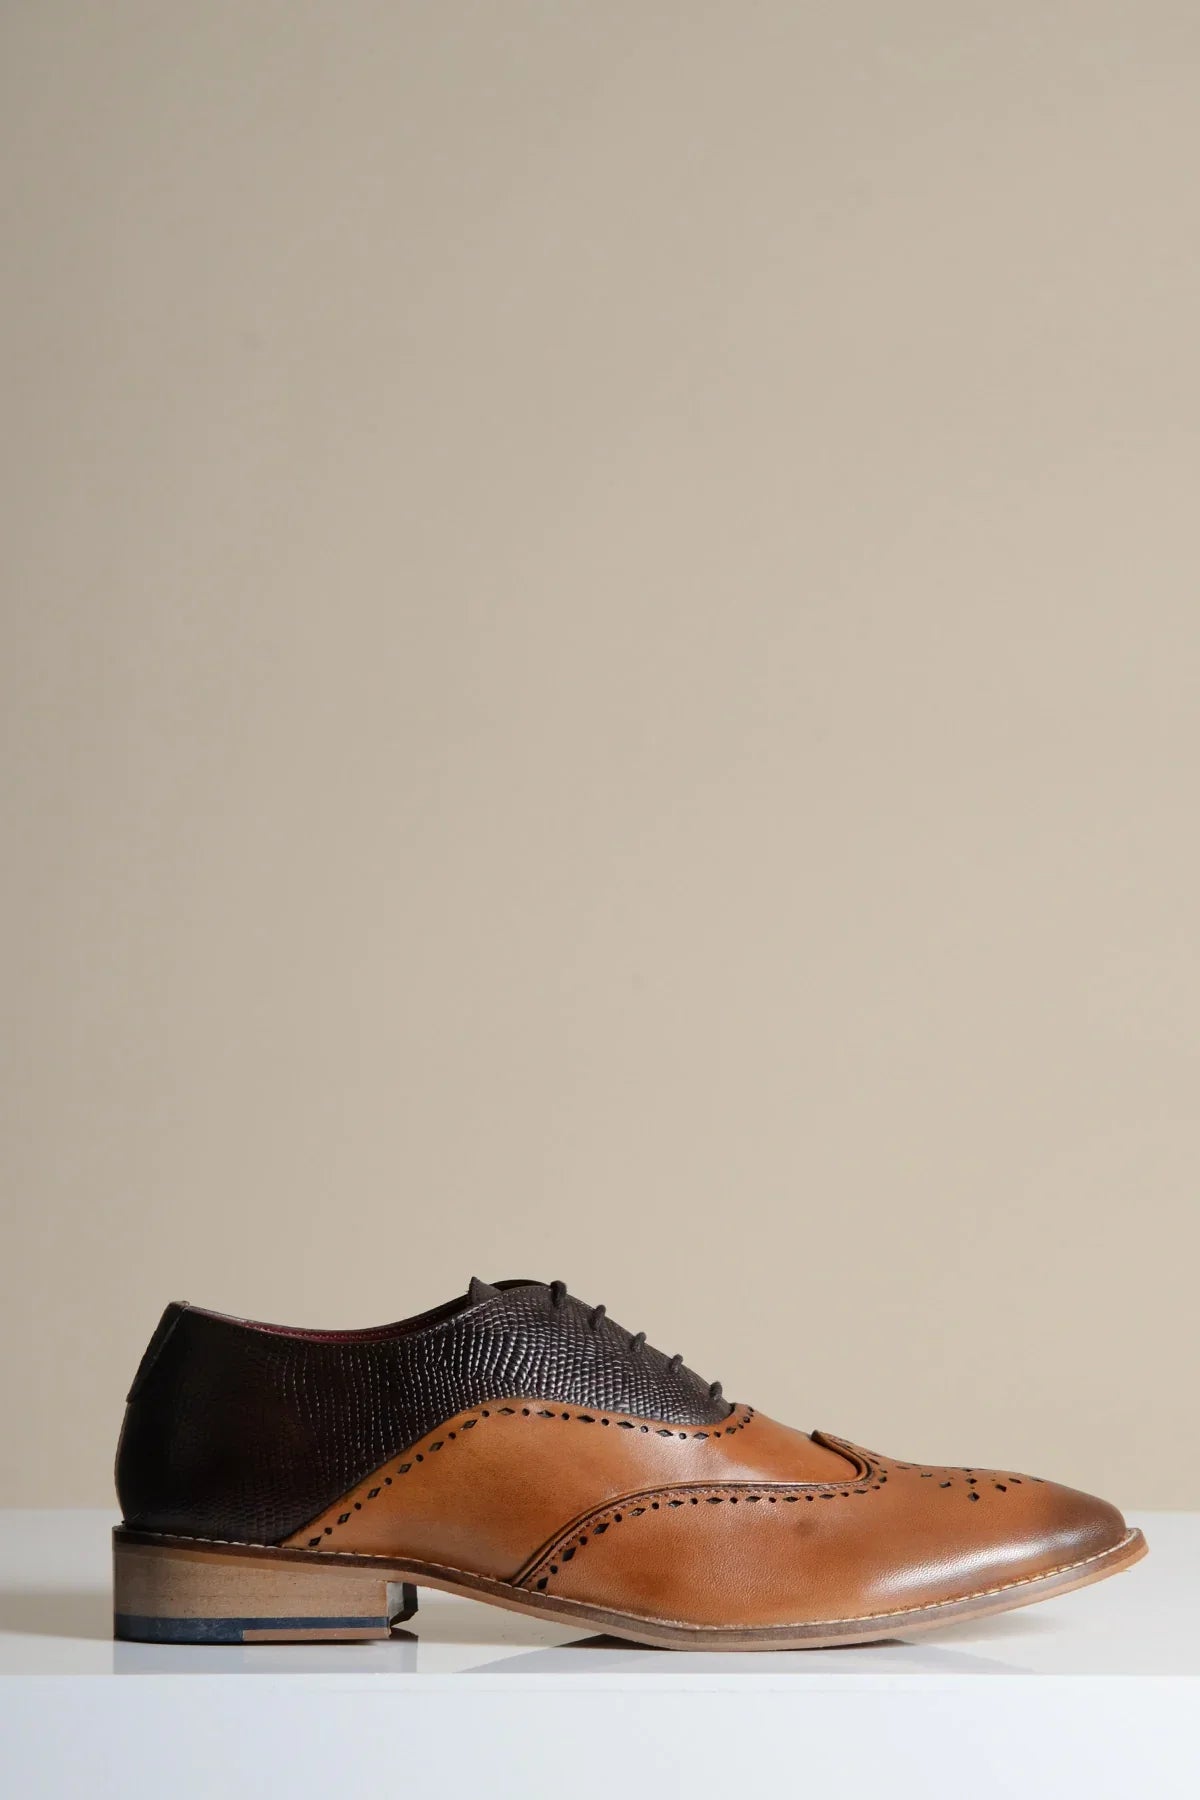 Hnedé kožené topánky, Marc Darcy Ryan - Wingtip brogue